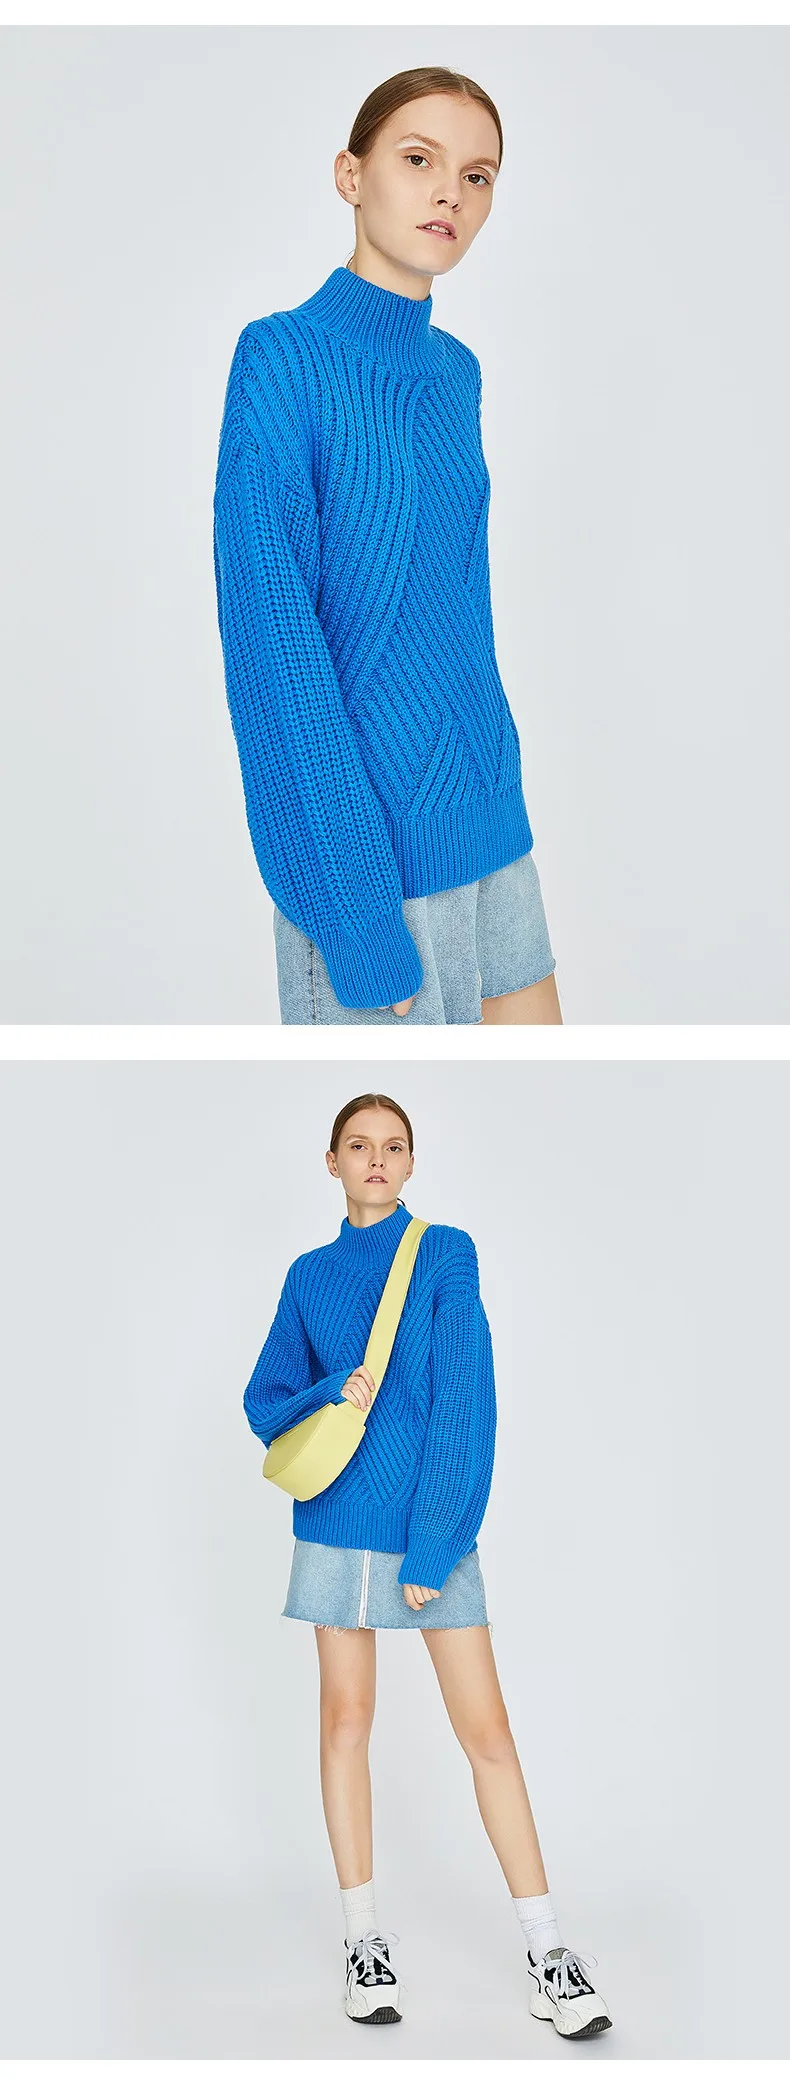 Toyouth водолазка Для женщин свитер негабаритных пуловеры с длинными рукавами витой высокое качество свитера Повседневное перемычки Sueter Mujer